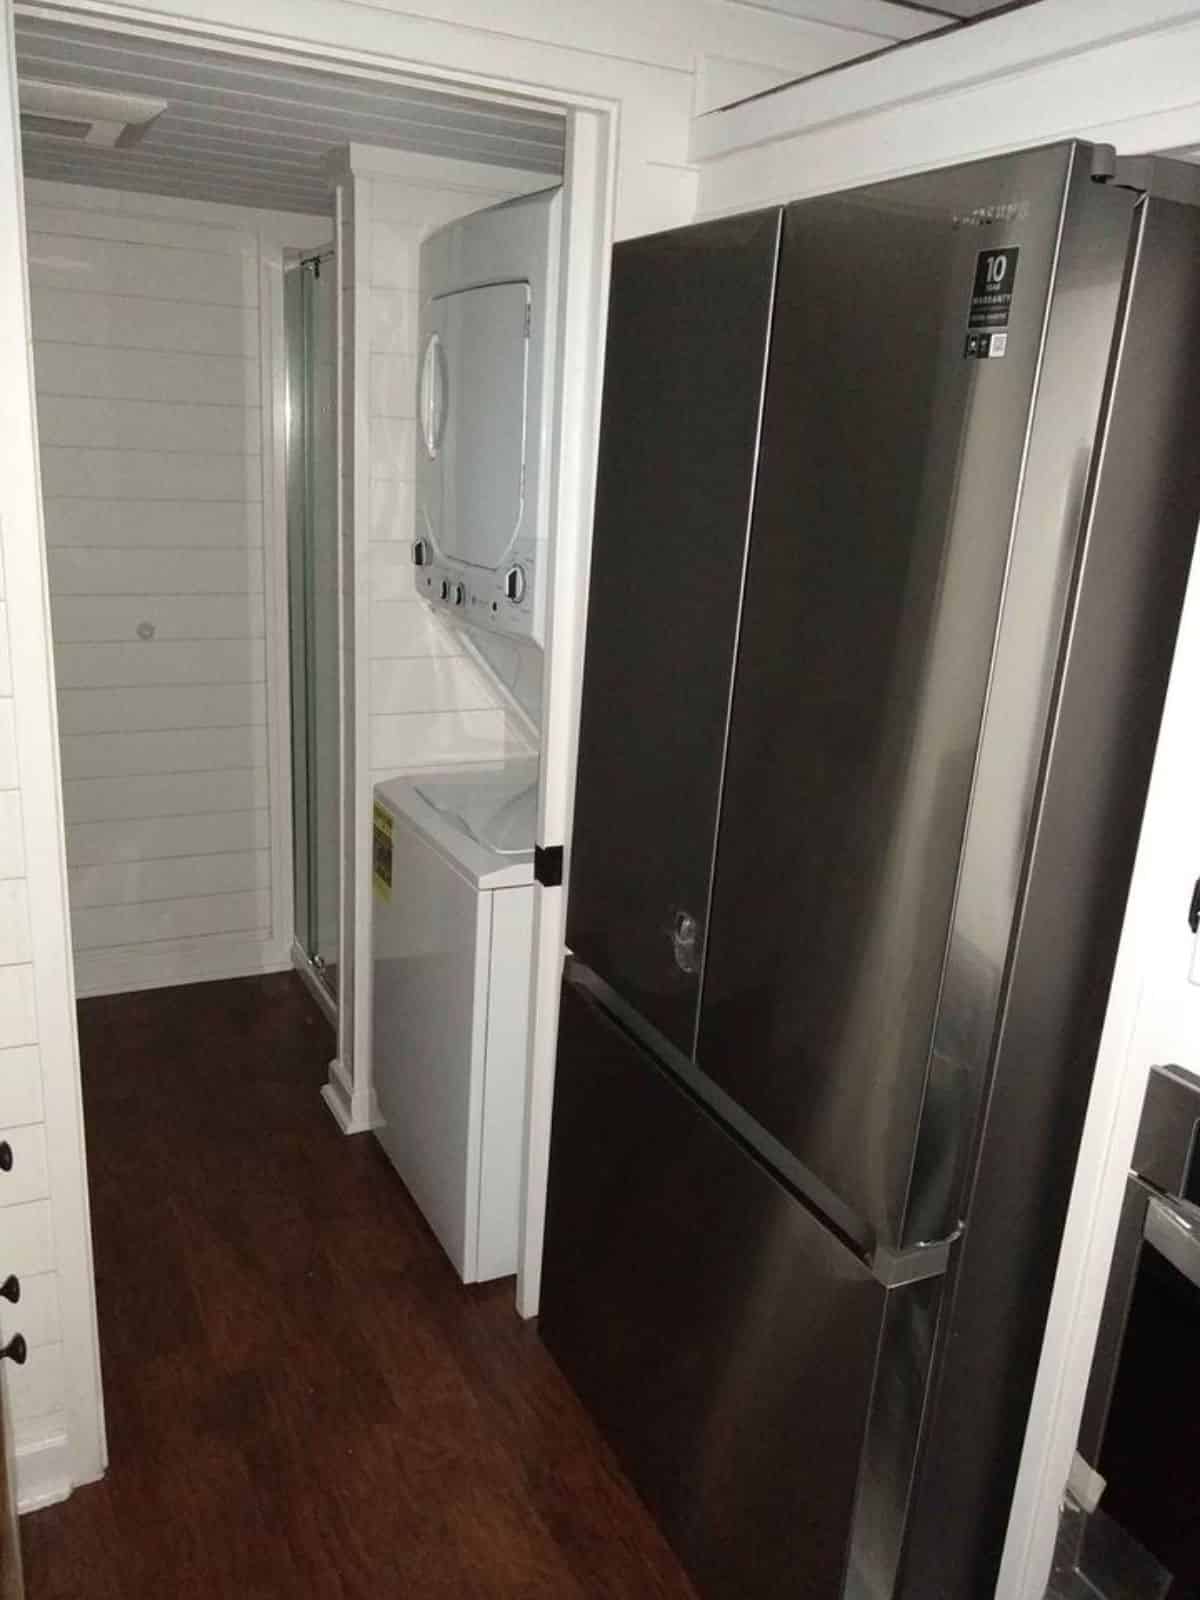 Double door refrigerator included in the deal